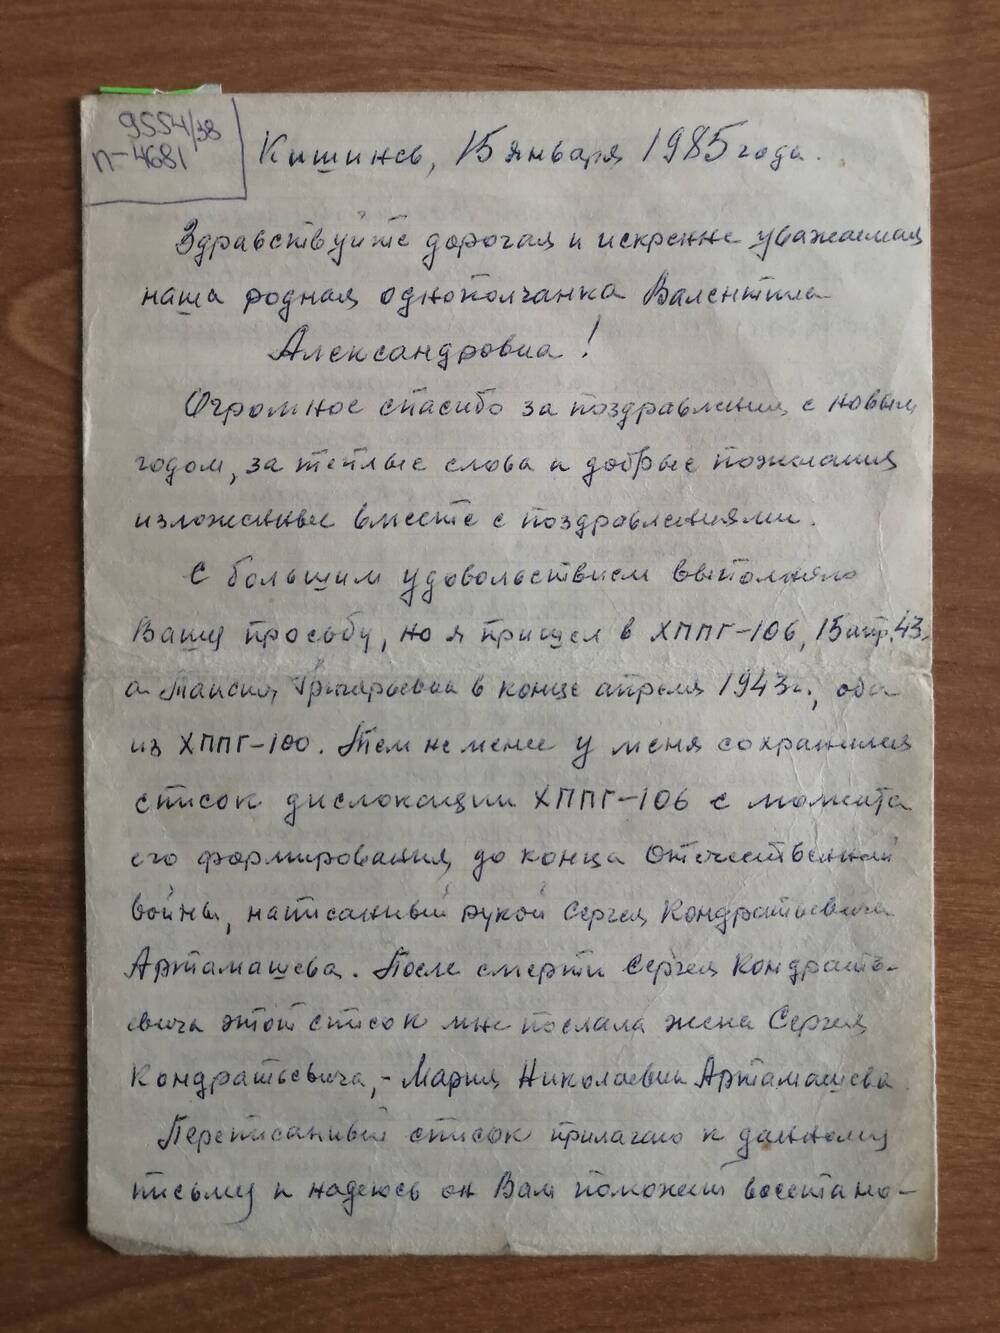 Письмо Смирновой Валентине Александровне от однополчан Баженовых Таси и Михаила.